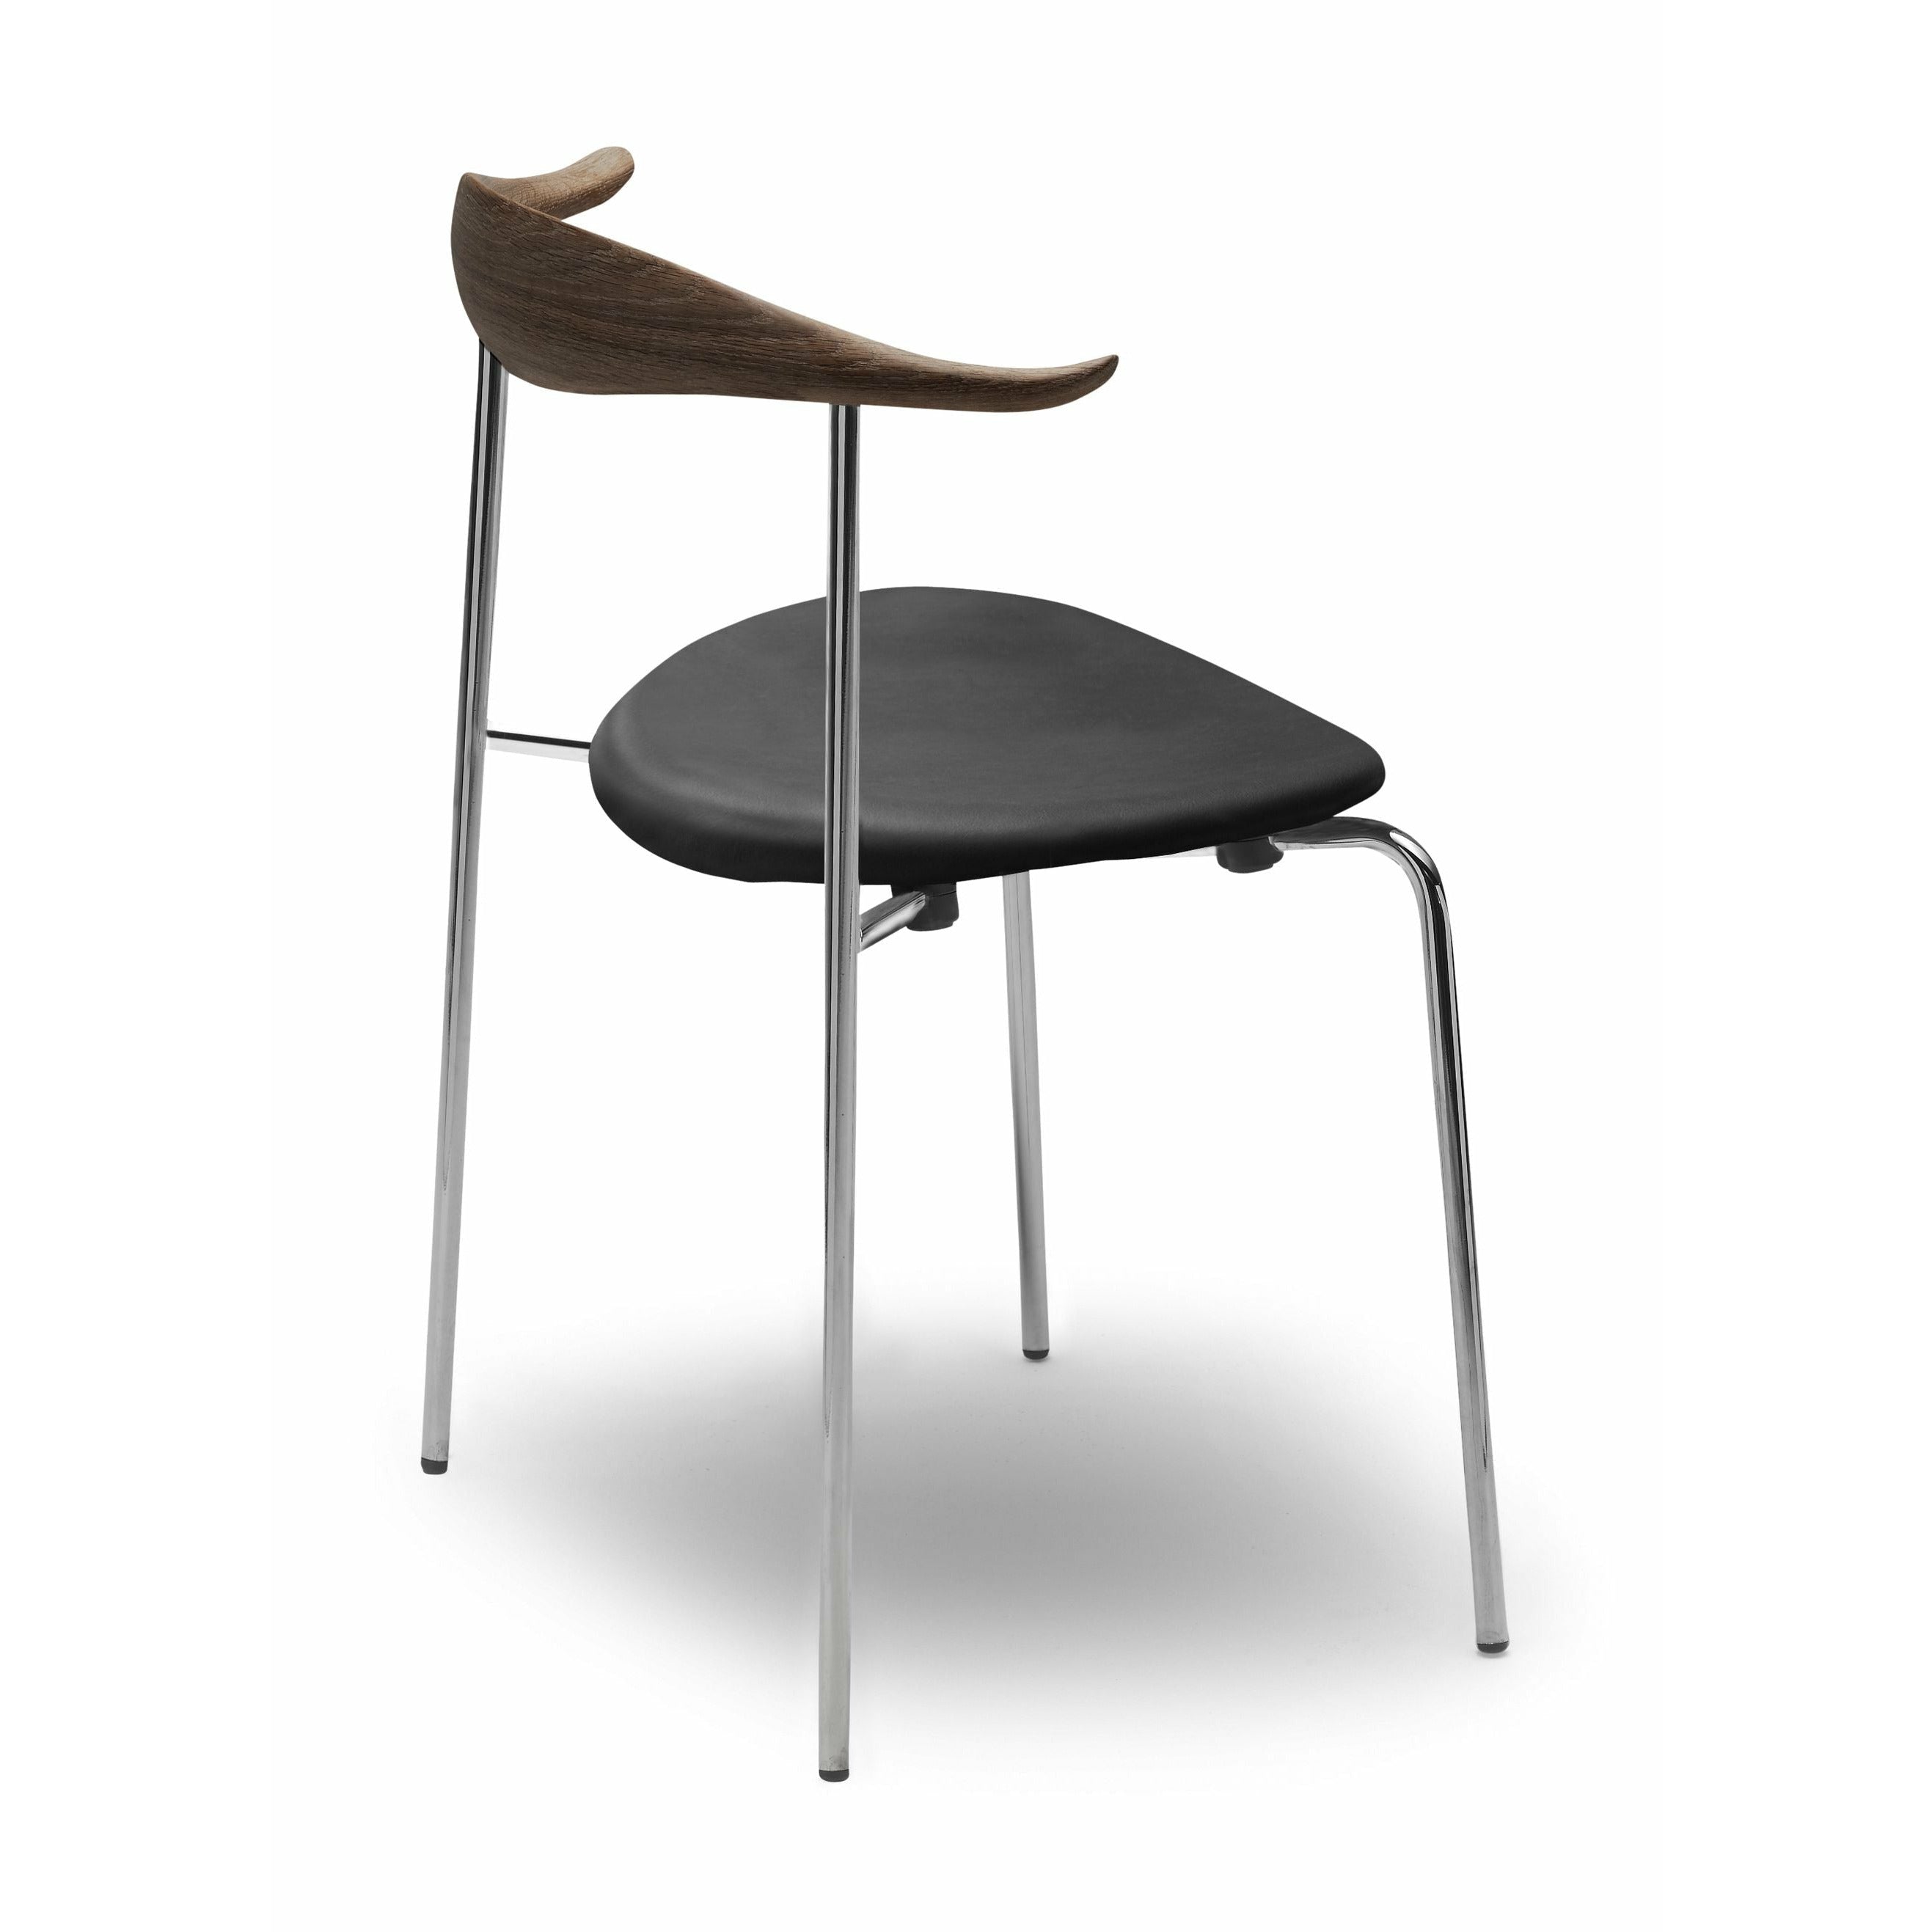 Carl Hansen CH88 P -stol, ekrökolja/Thor 301 läder